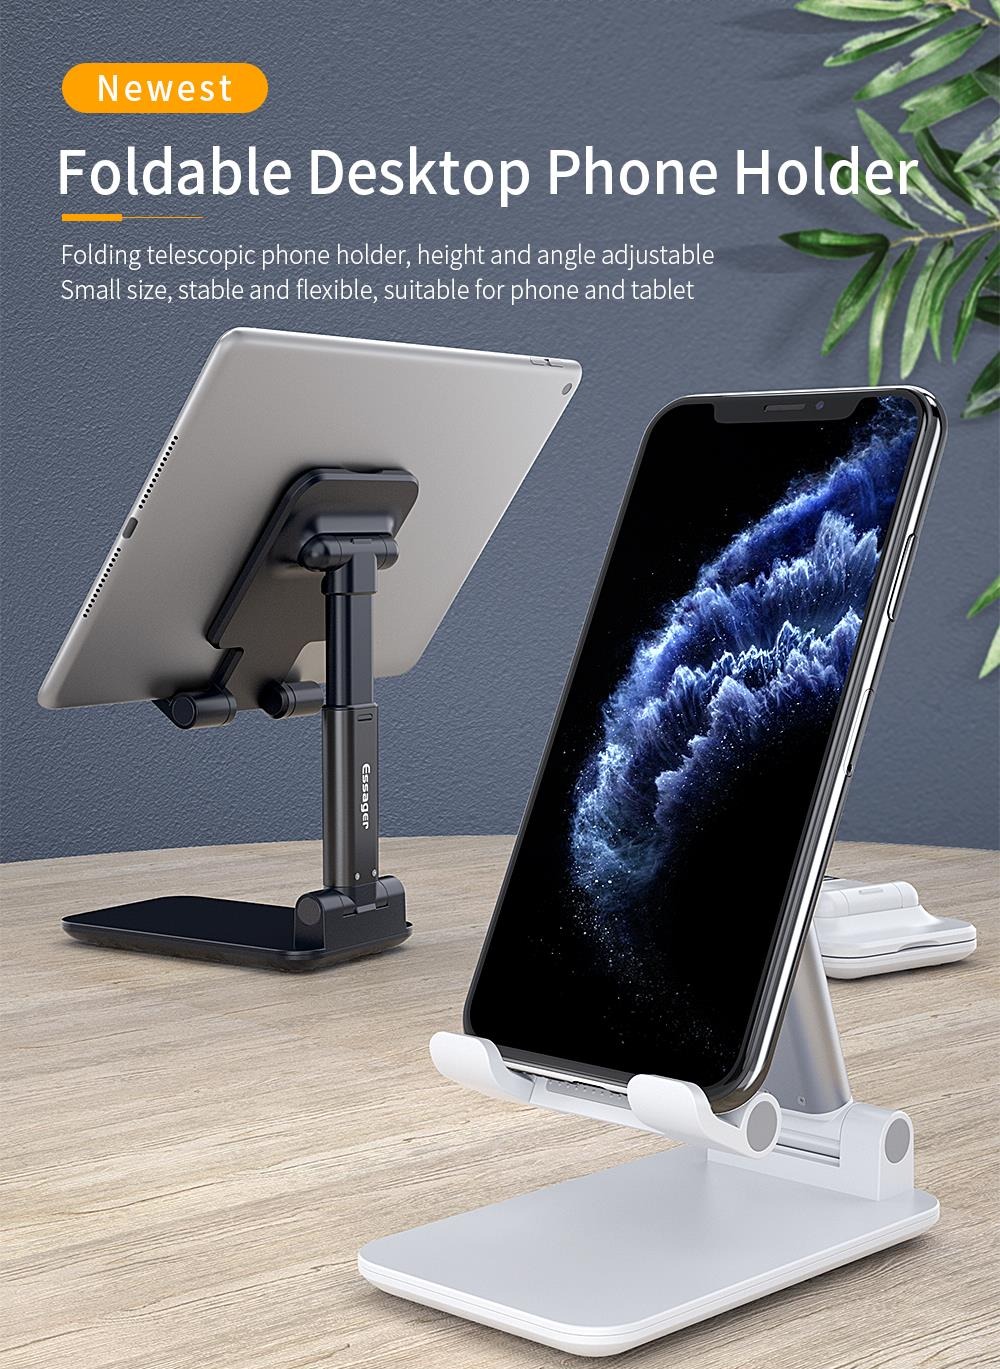 ขาตั้งไอแพด โทรศัพท์มือถือ วัสดุอะลูมิเนียมอัลลอยคุณภาพ ปรับความสูงได้ สำหรับโทรศัพท์มือถือ/แท็บเล็ต/iPad holder ที่ตั้งมือถือแท็บเล็ต บนโต๊ะ